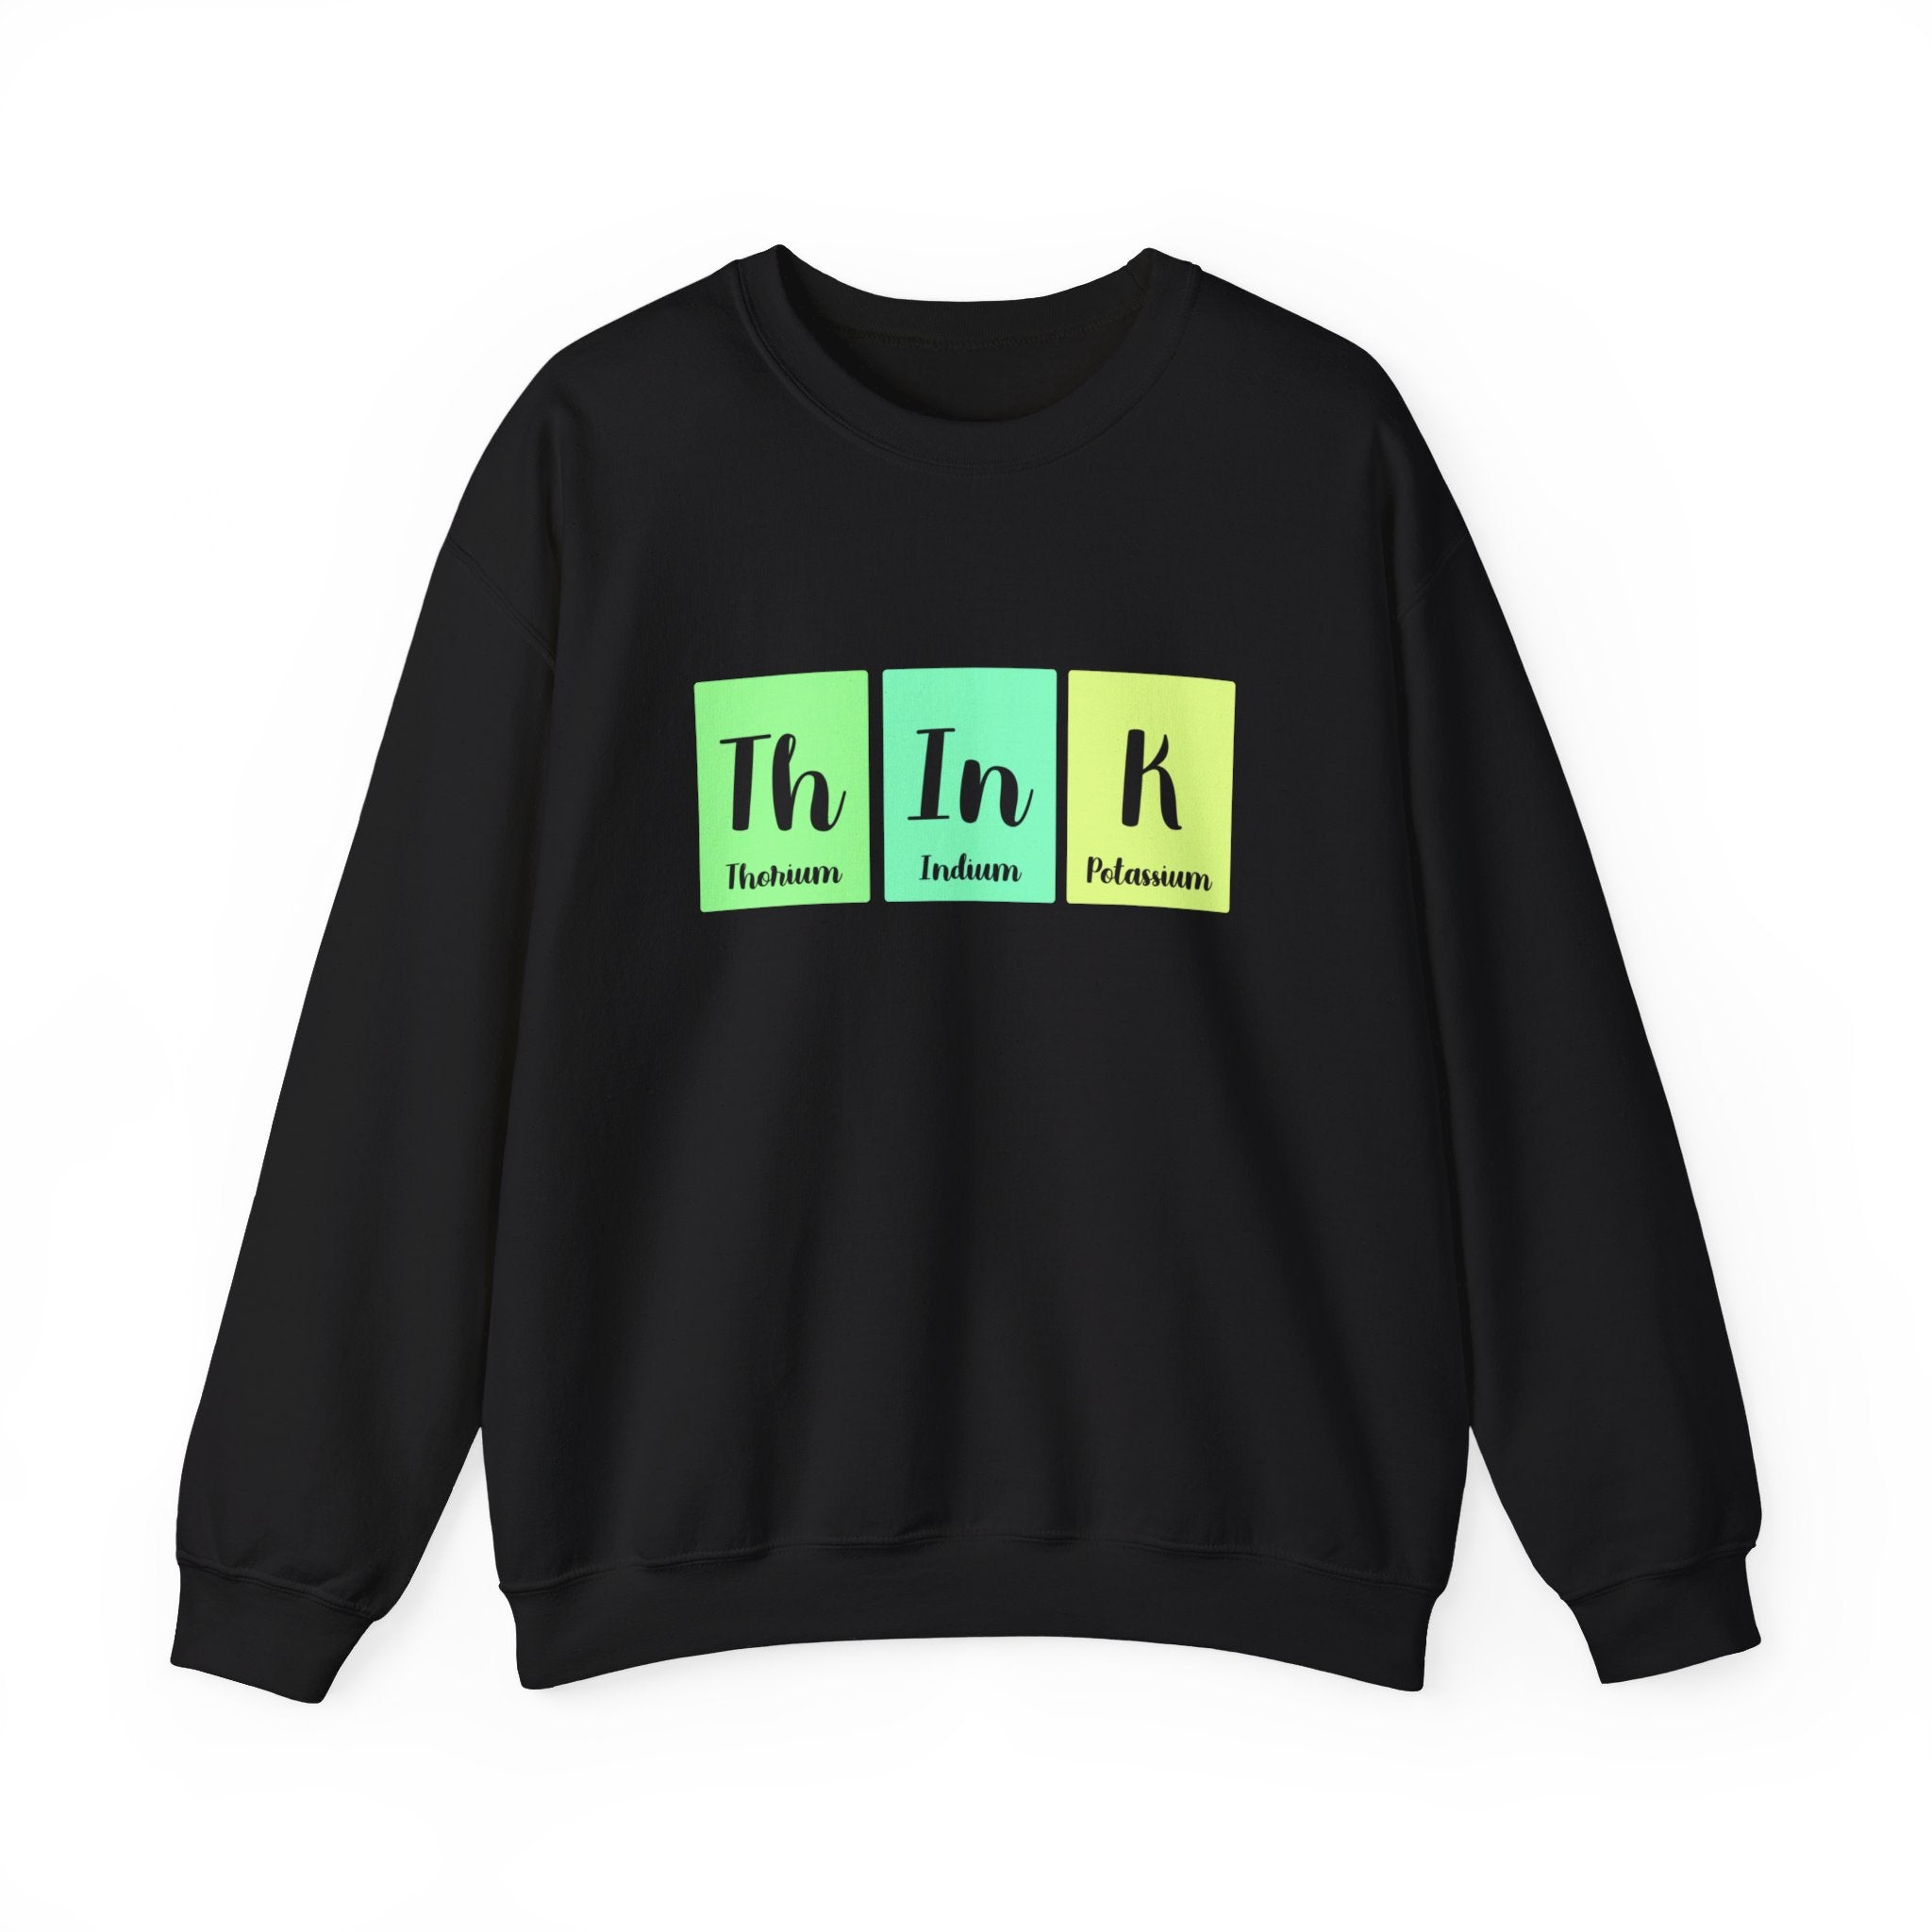 Th-In-K -  Sweatshirt